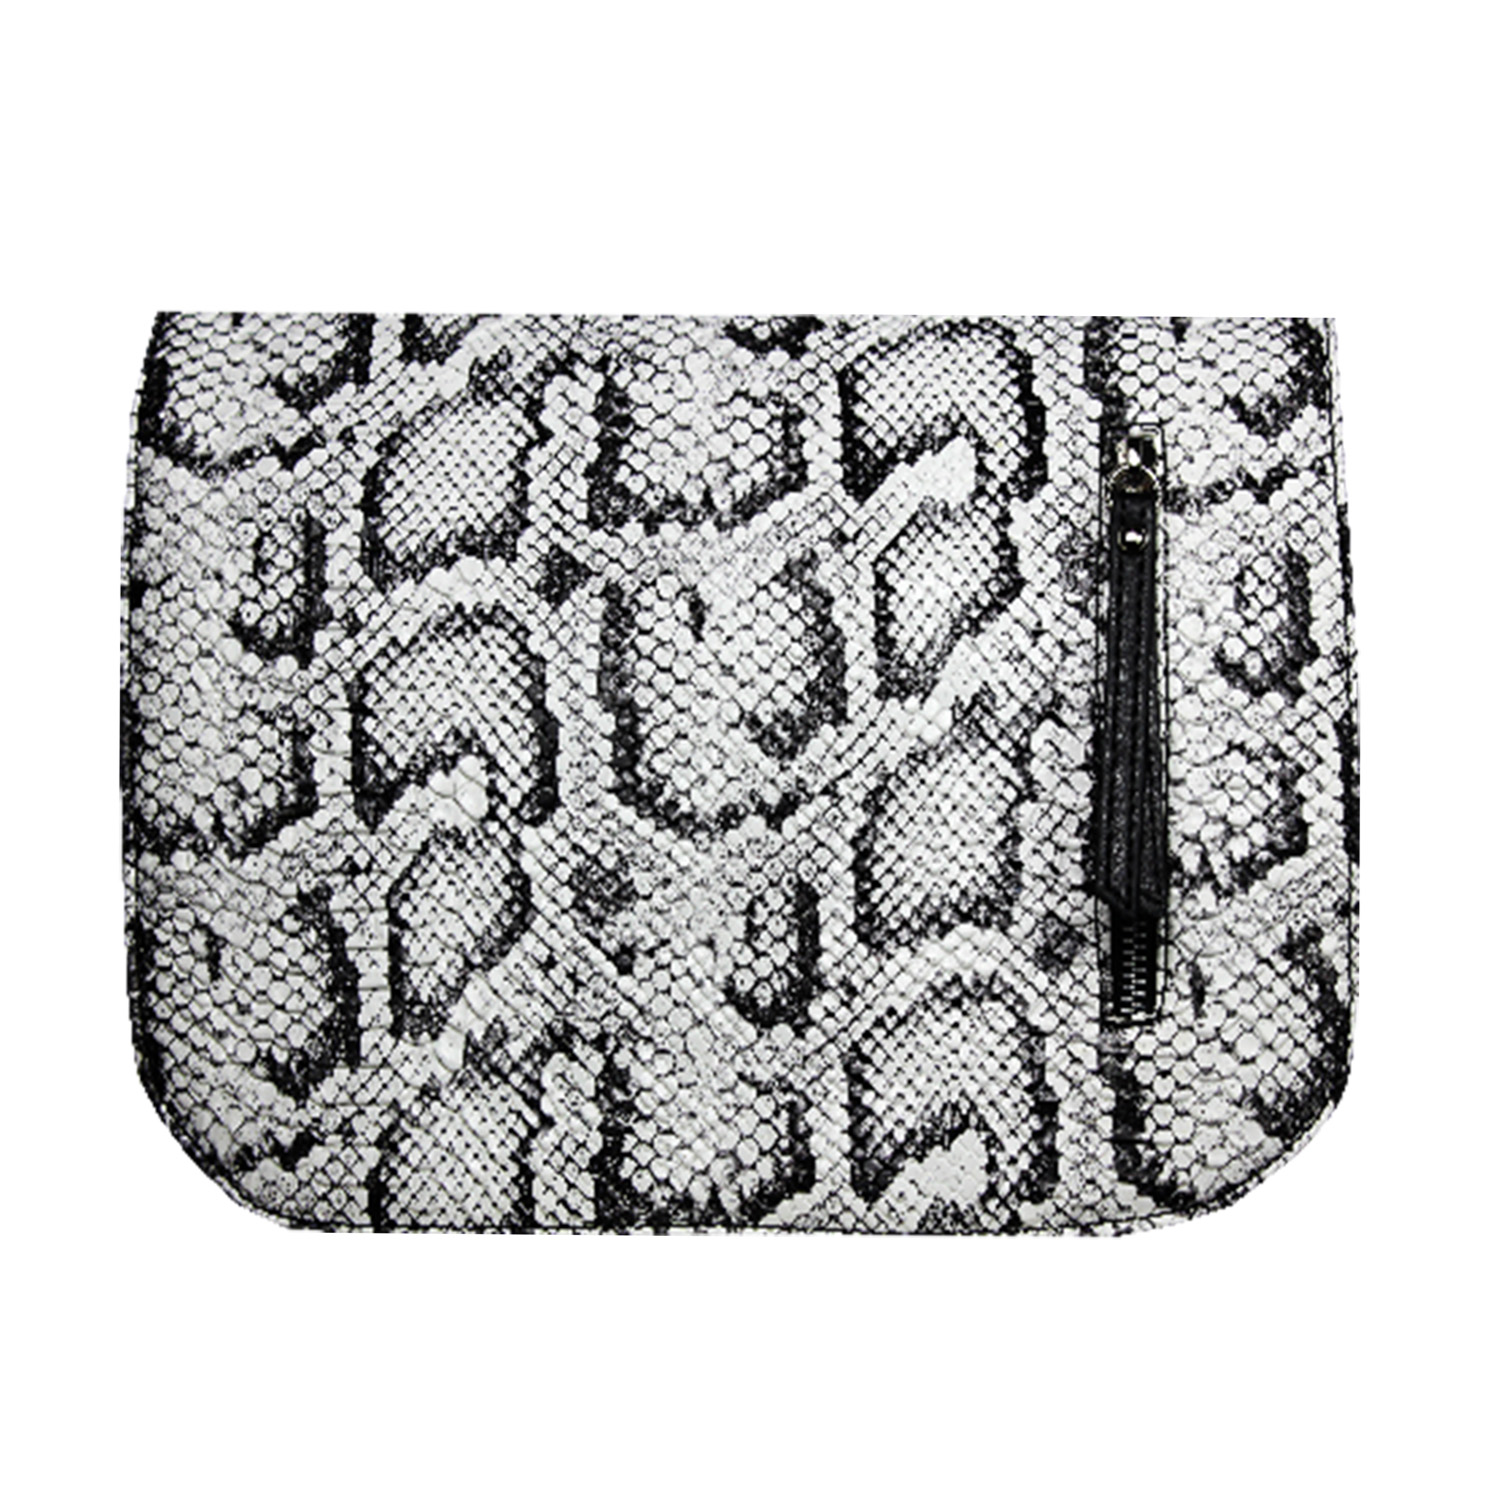 schwarz weißes Wechseldesign im Animalprint für die Damenhandtasche von Delieta